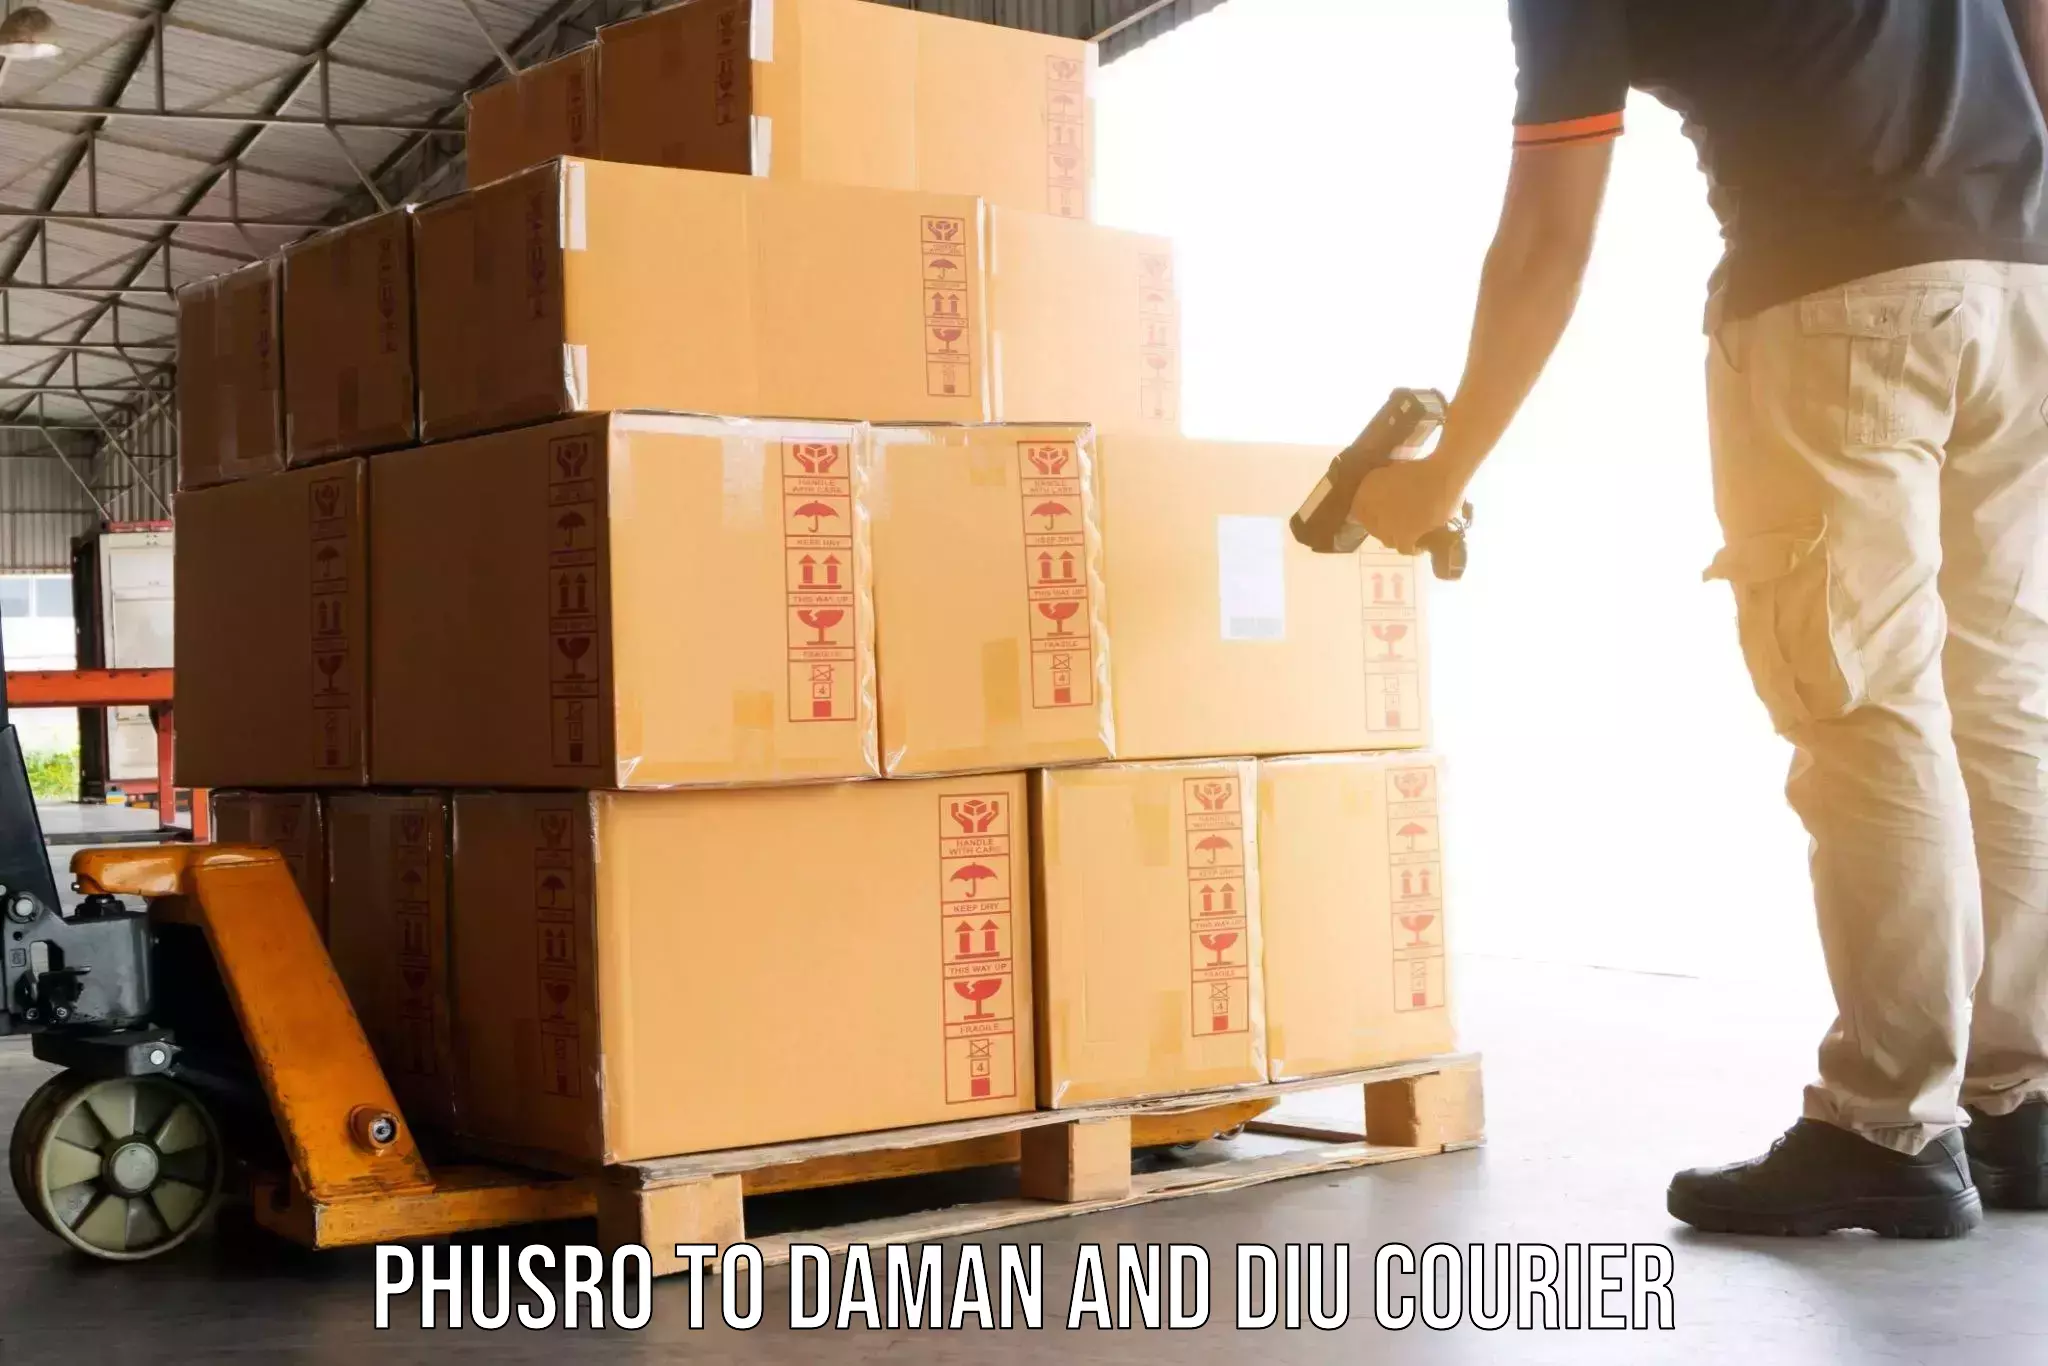 Safe household movers Phusro to Diu